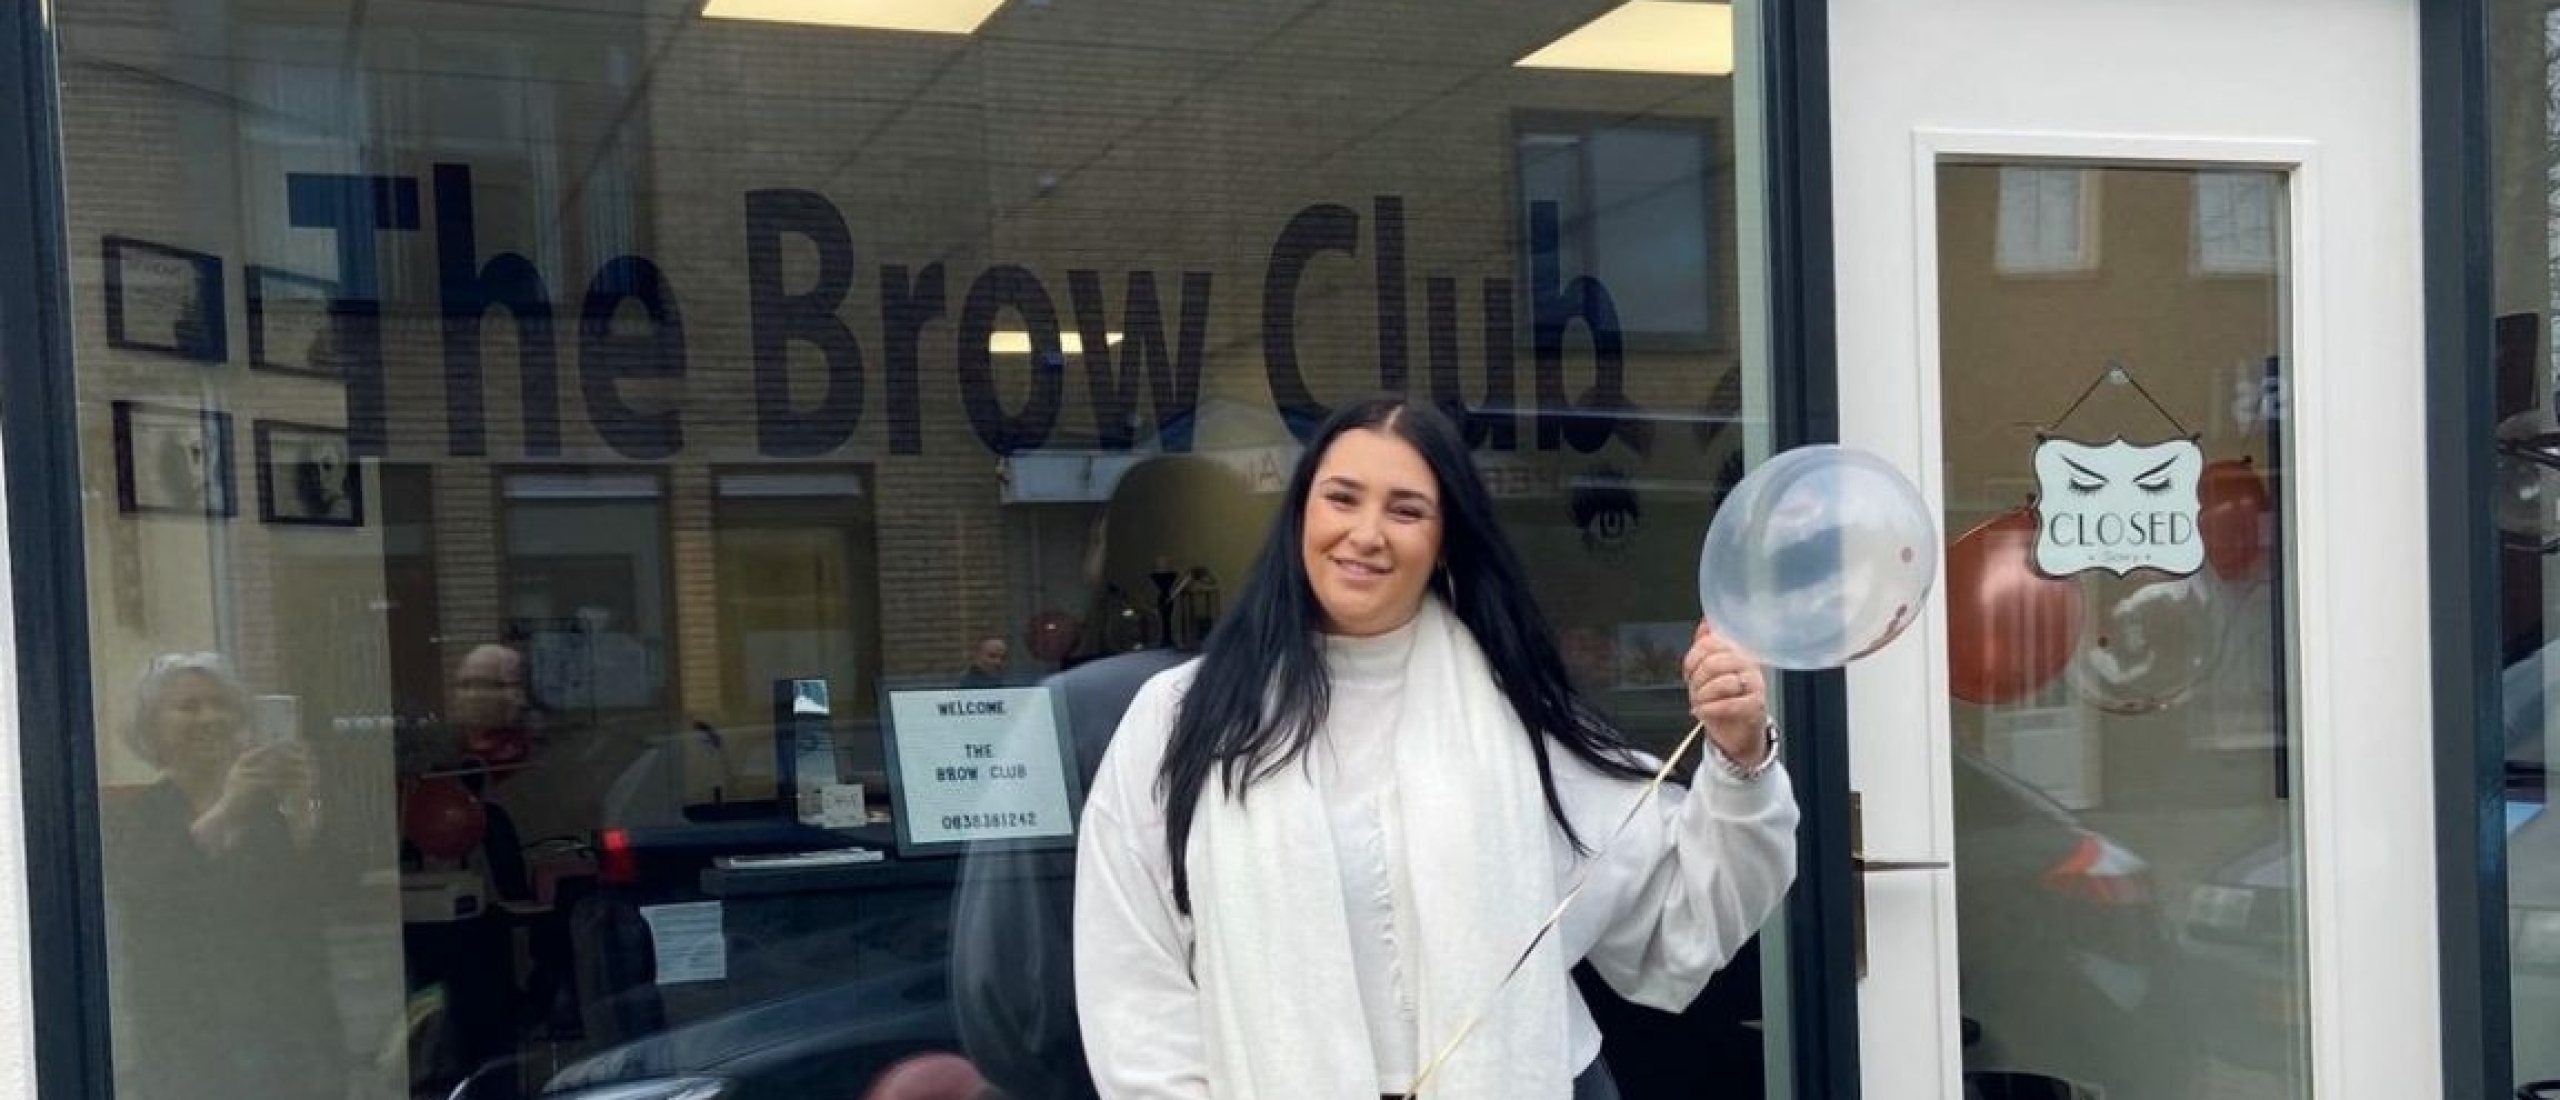 The Brow Club: de specialist in wenkbrauwen en meer!